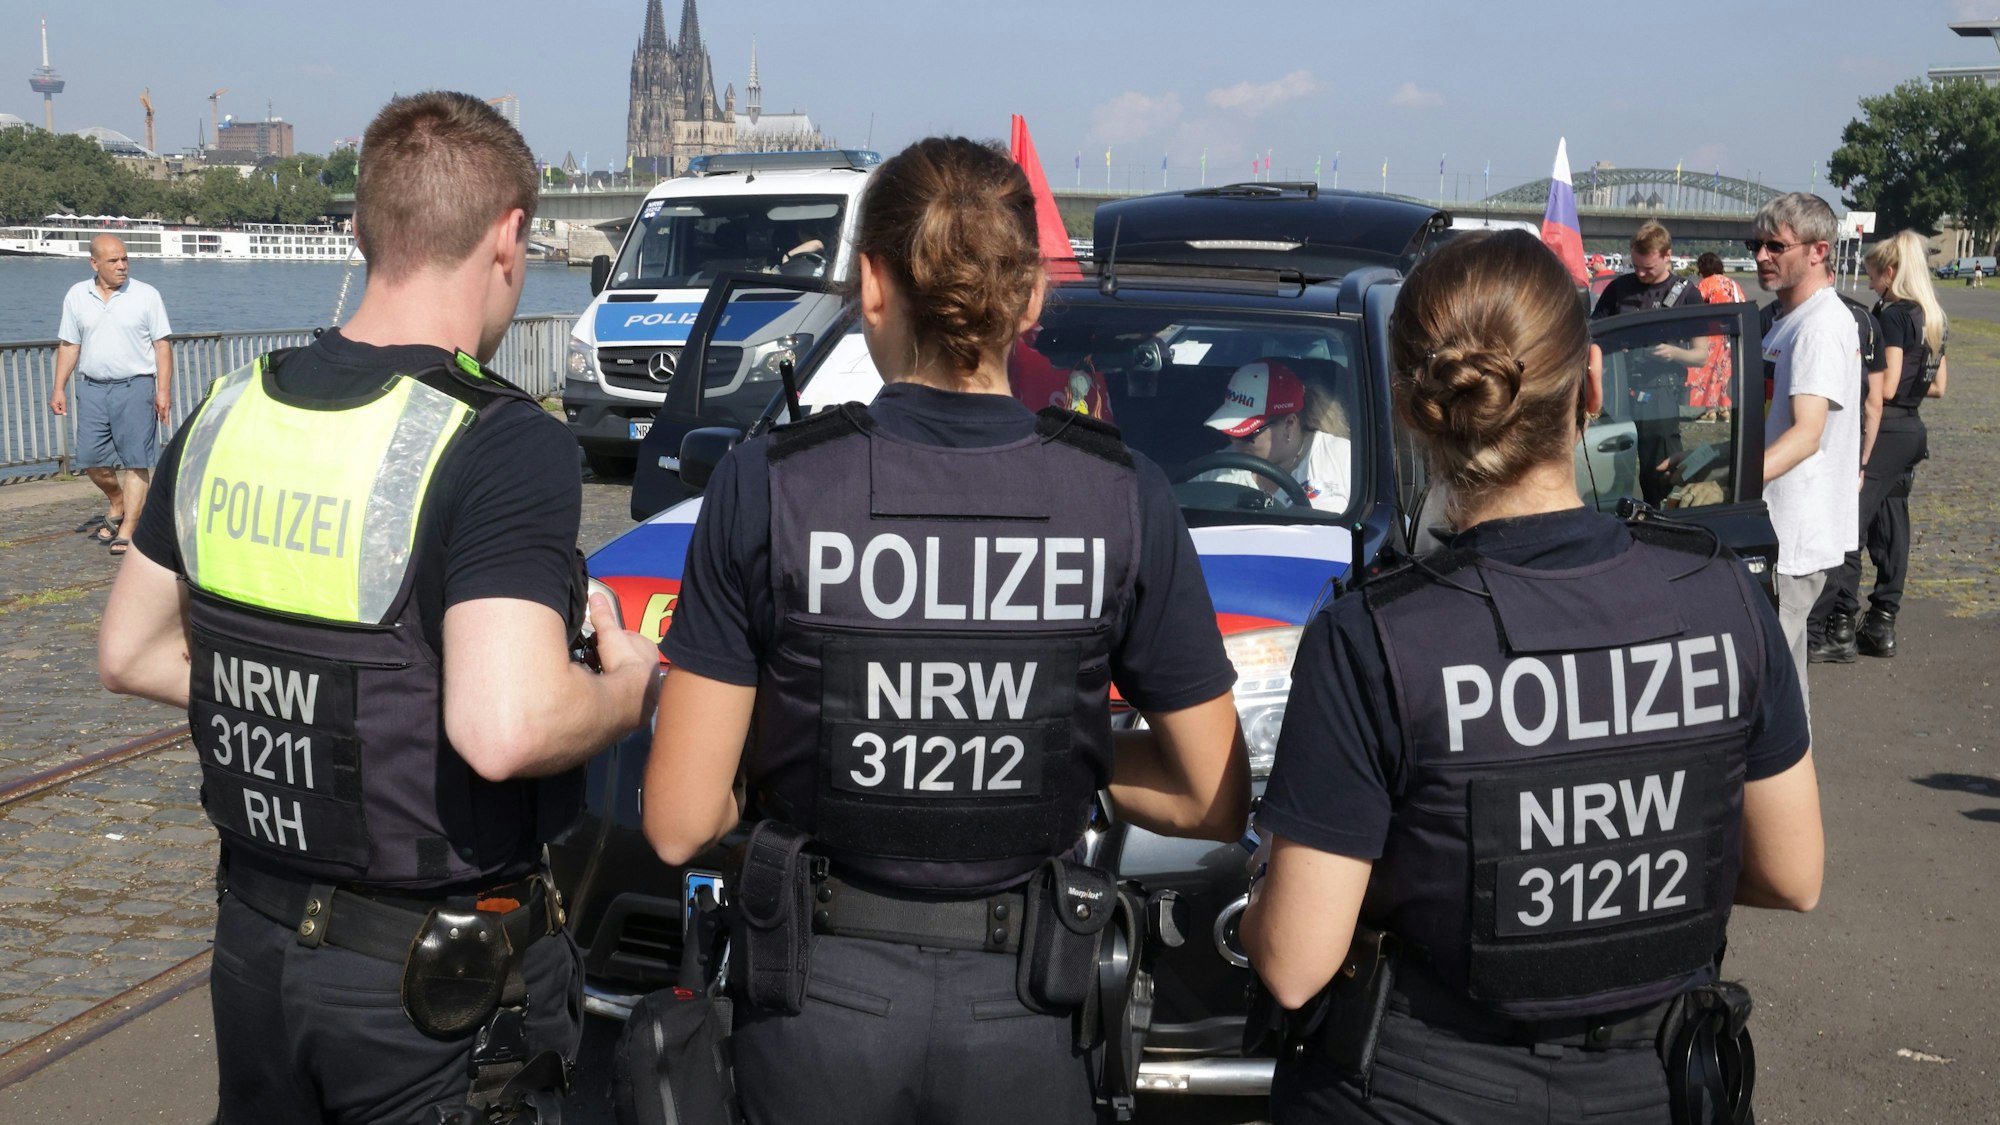 Polizisten kontrollierten die Teilnehmer vor Beginn des Autokorsos.